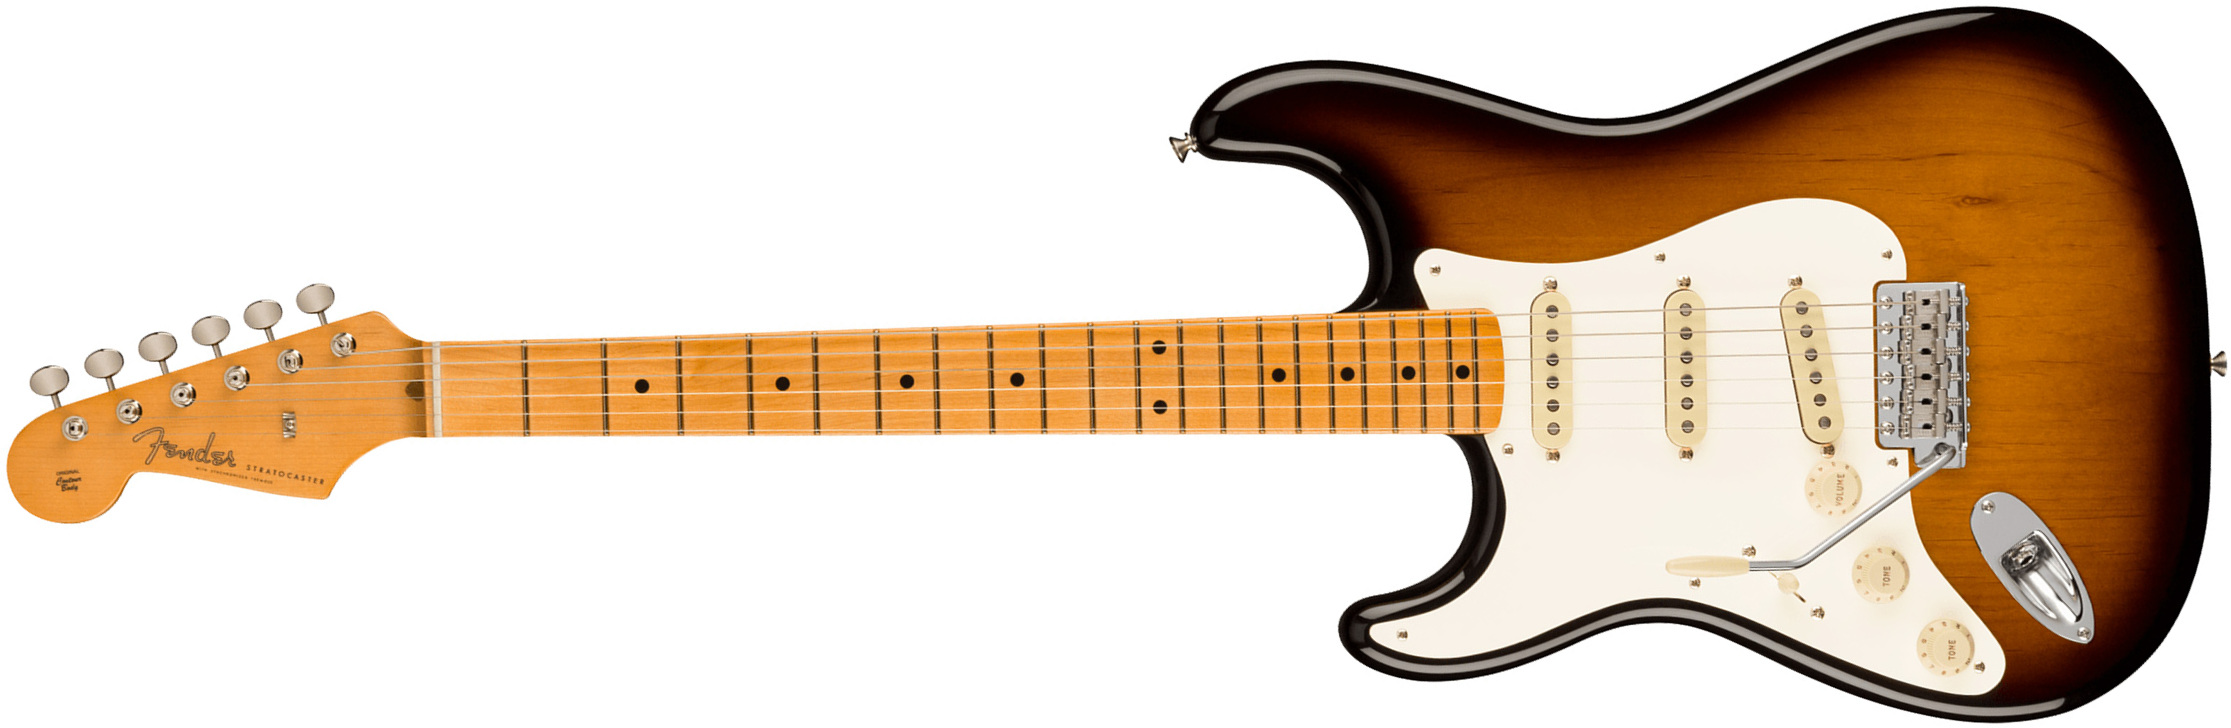 Fender Strat 1957 American Vintage Ii Lh Gaucher Usa 3s Trem Mn - 2-color Sunburst - Guitare Électrique Gaucher - Main picture